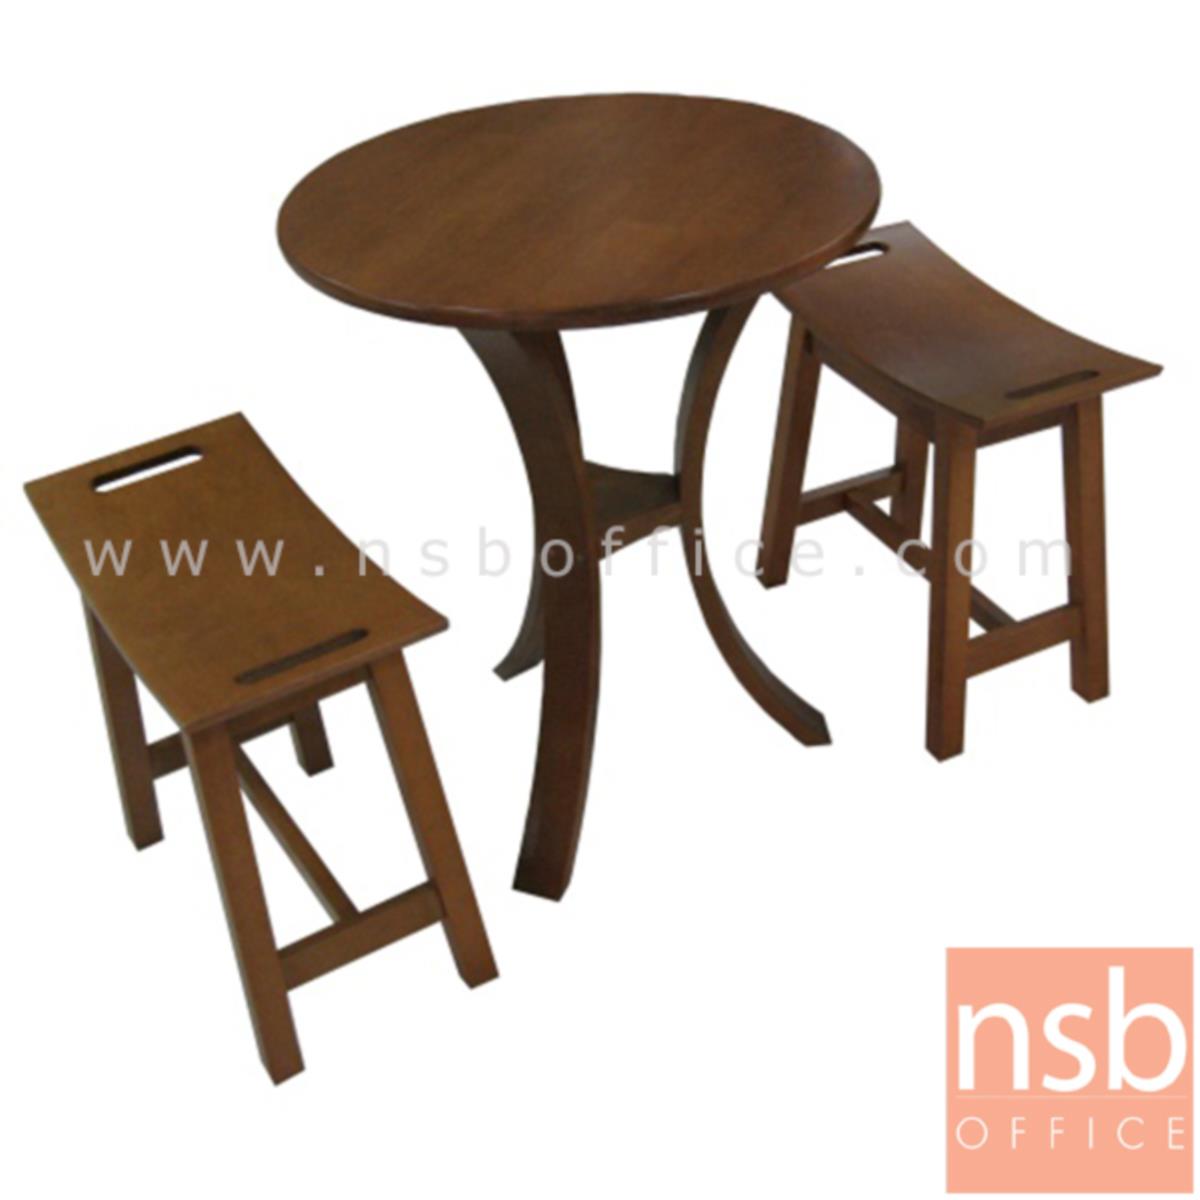 L01A099: ชุดโต๊ะกาแฟฟิวชันไม้ยาง สีโอ๊ค ขนาดโต๊ะ 60*60*75 ซม.   